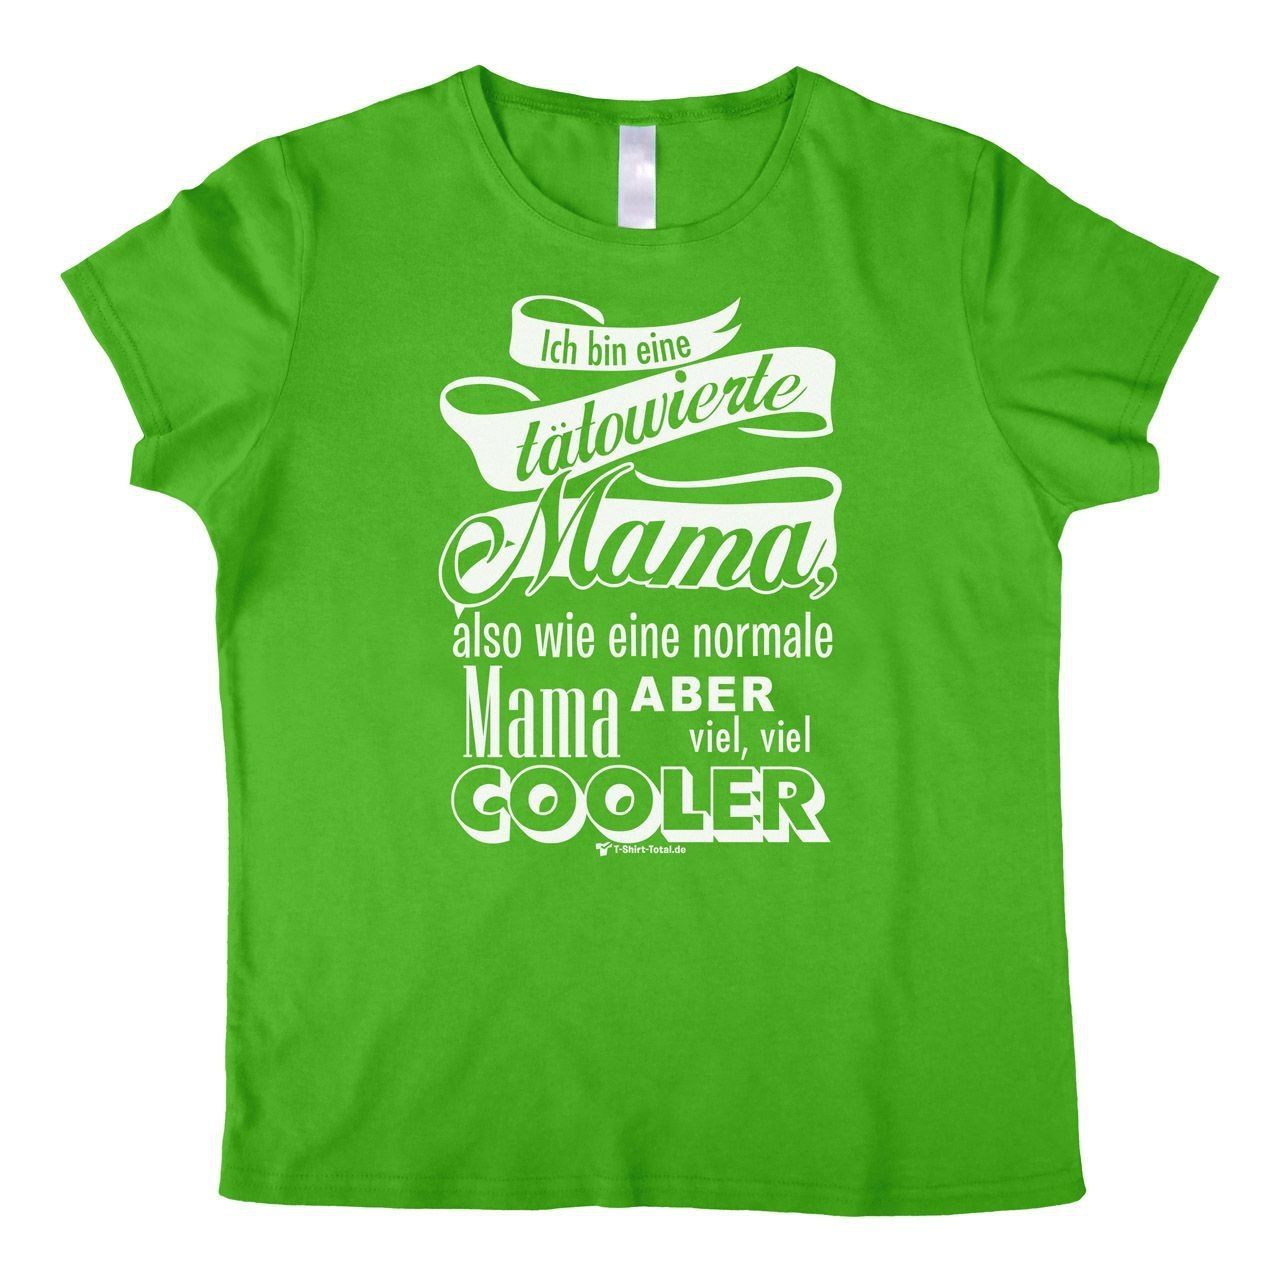 Tätowierte Mama Woman T-Shirt grün Small